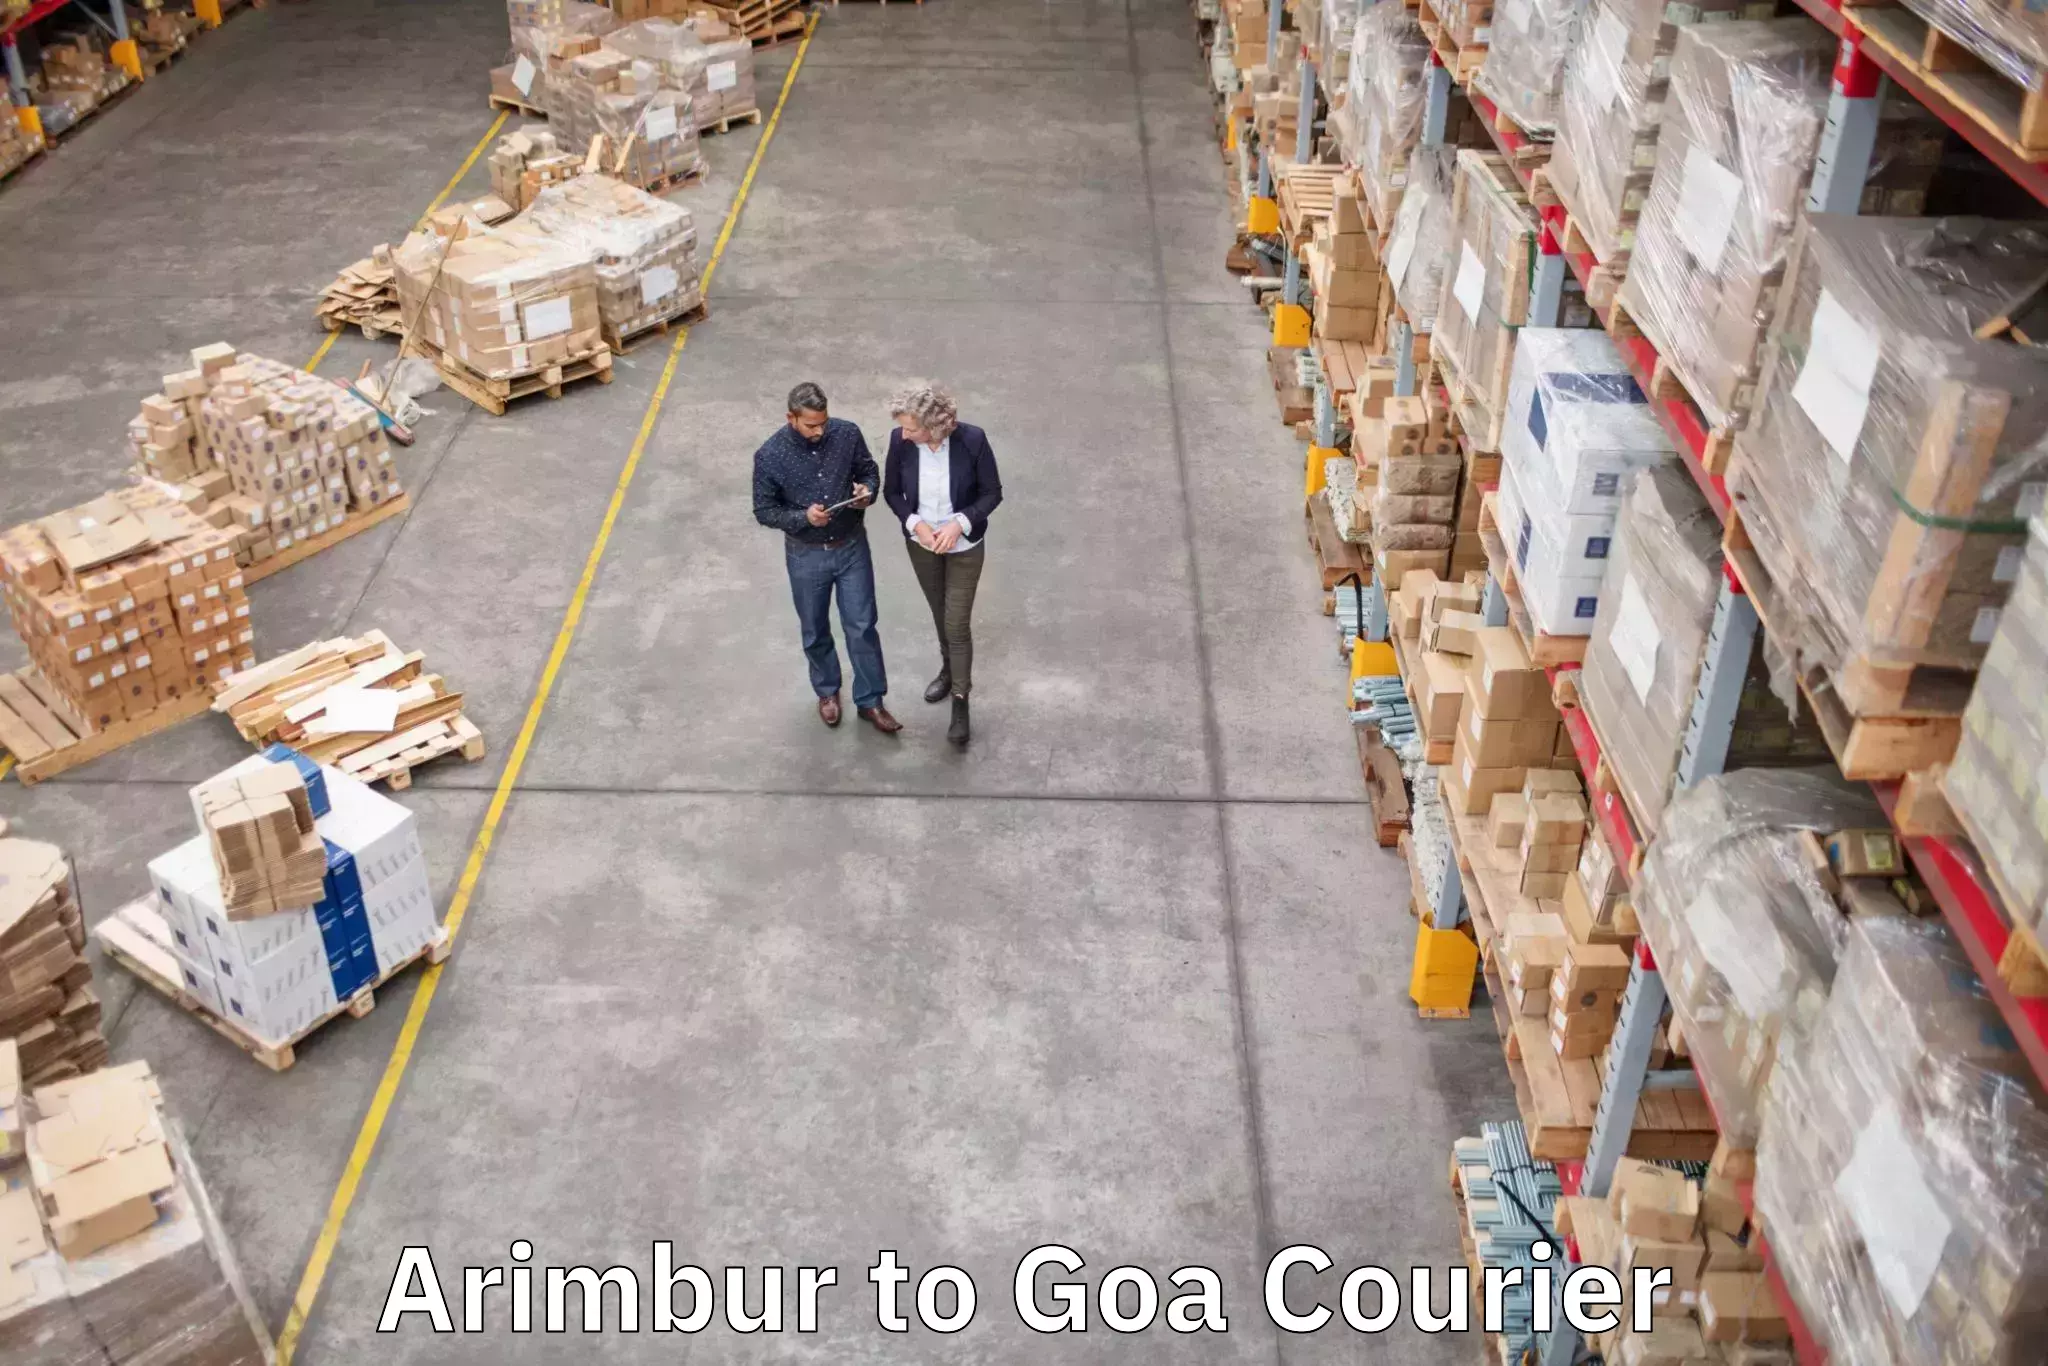 Baggage transport professionals Arimbur to Goa